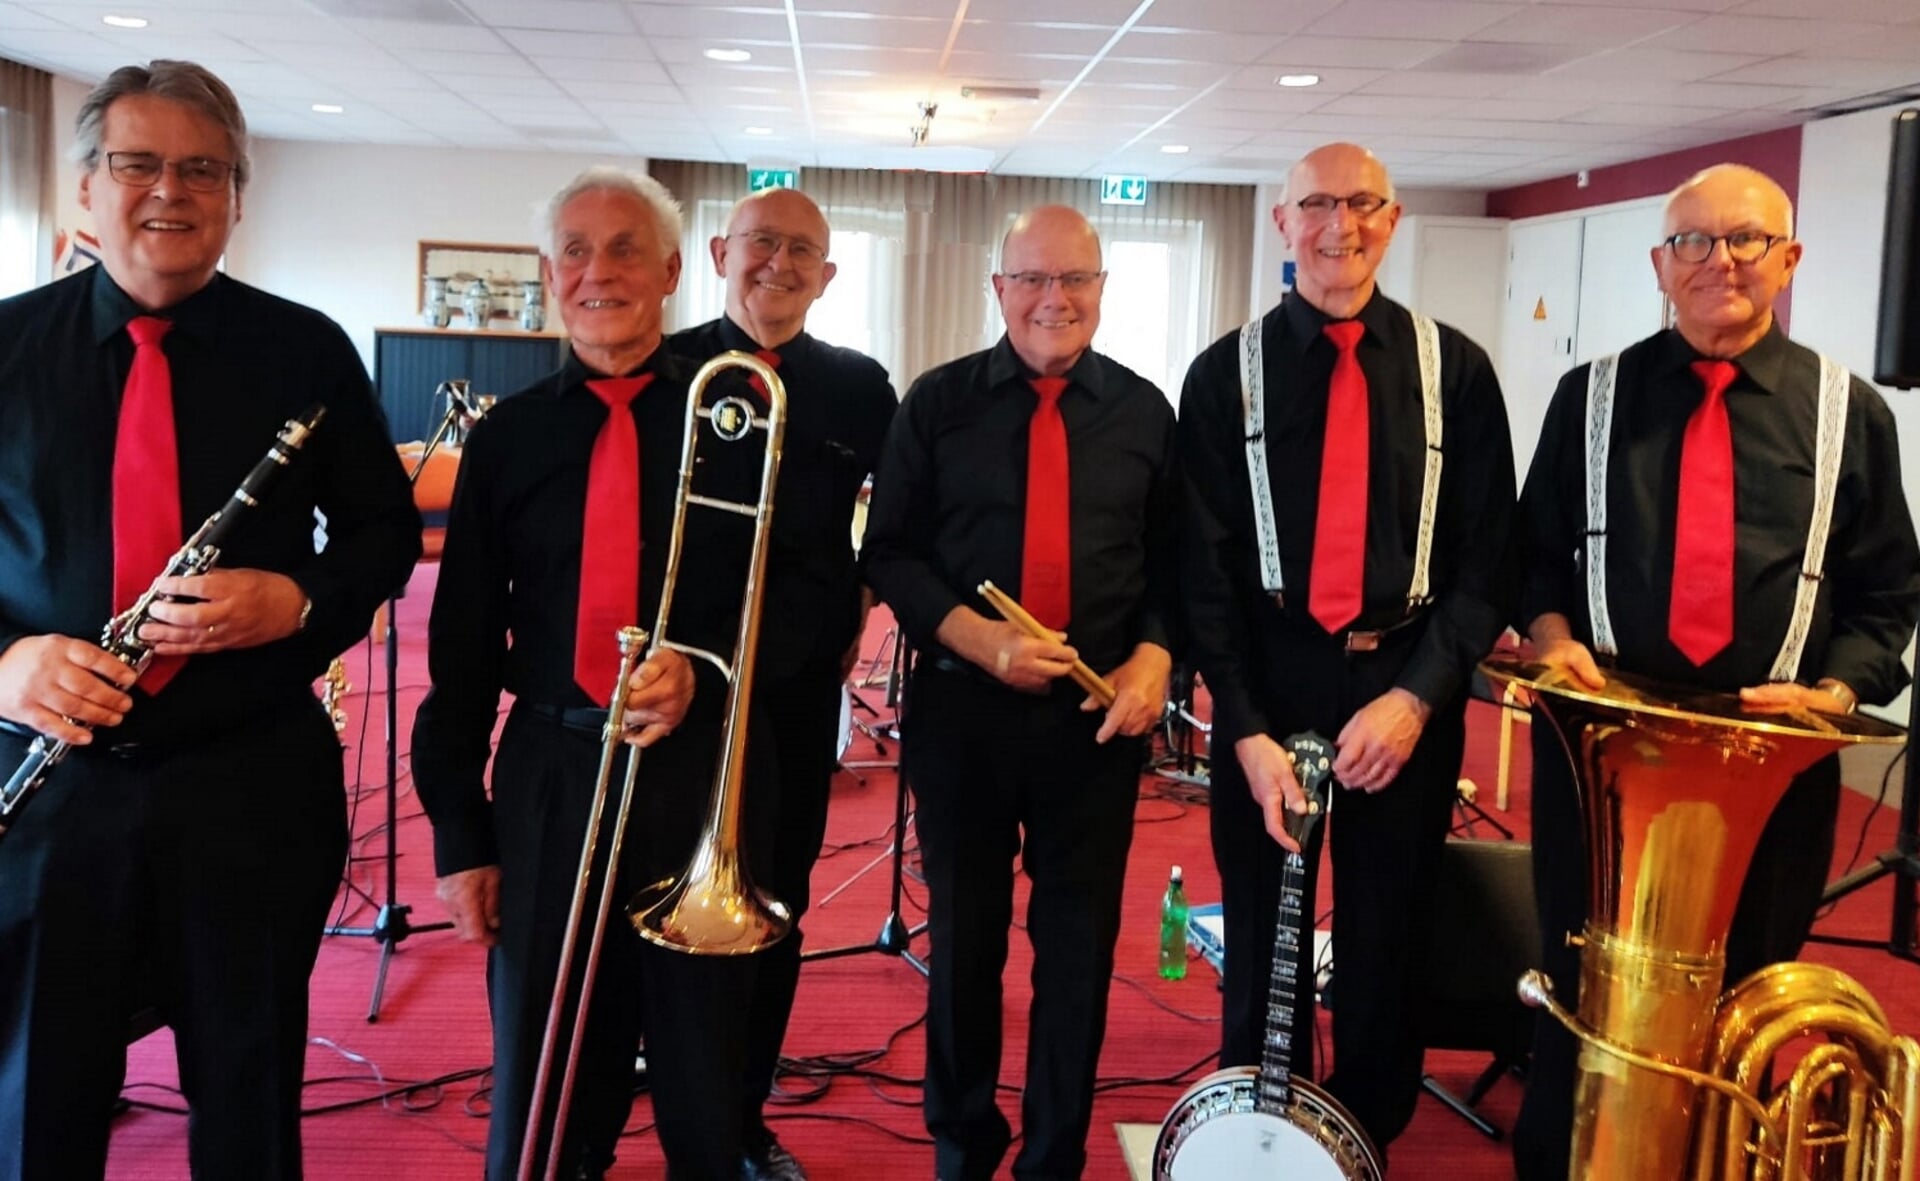 De Swanee Bridge Jazzband wordt gevormd door Jos Vos (Rosmalen), Anton Verlee (Sleeuwijk), Frans Lautenslager Boxtel en Will van Lokven (beiden uit Boxtel), Piet van der Windt (Sleeuwijk) en Loek Hamers (Berkel-Enschot).